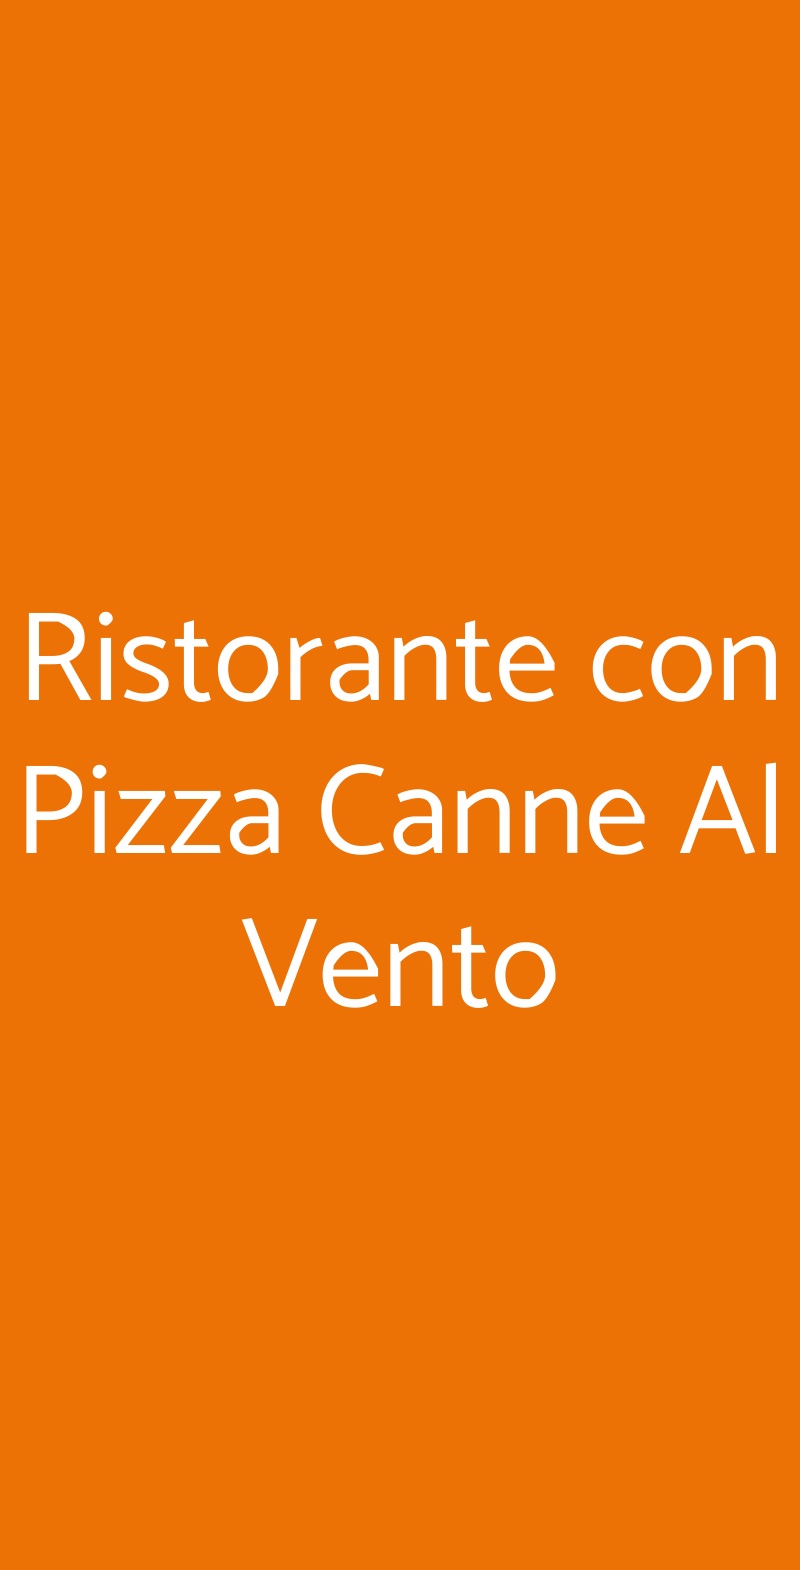 Ristorante con Pizza Canne Al Vento Lonato menù 1 pagina